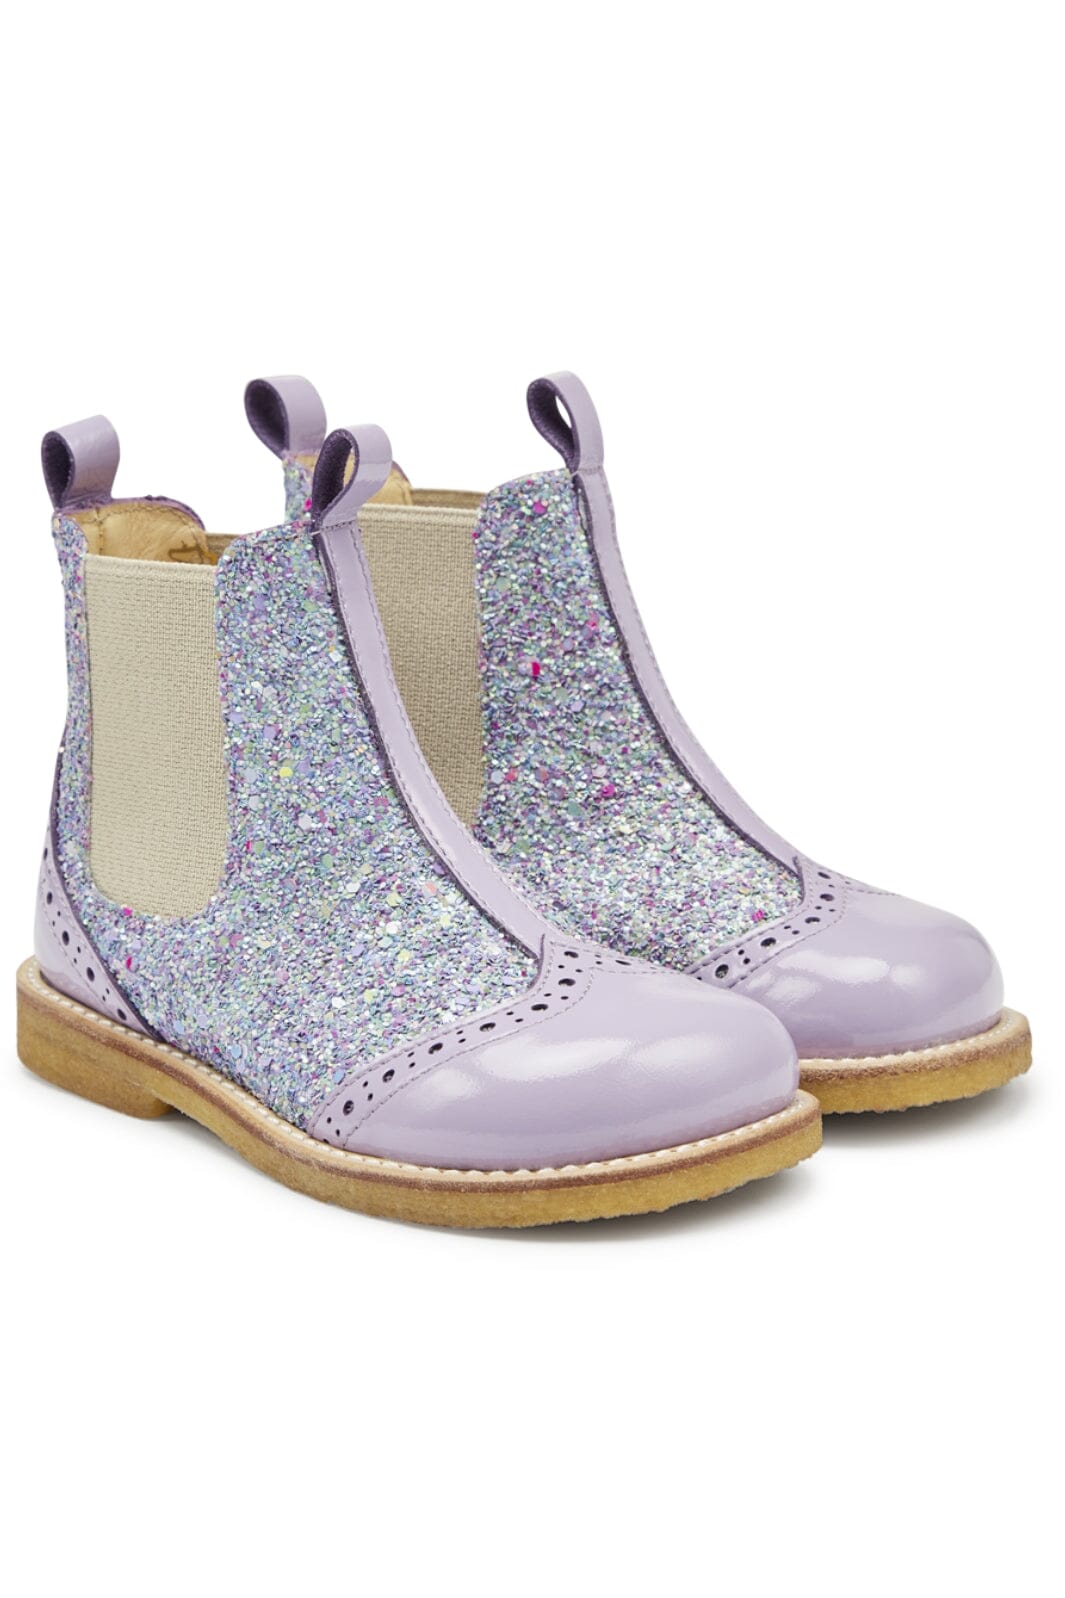 Angulus - Chelsea støvle med glitter og brogues detaljer - 2709/2753/010 Lilac/Congetti Glitter/Beige Elastic Støvler 